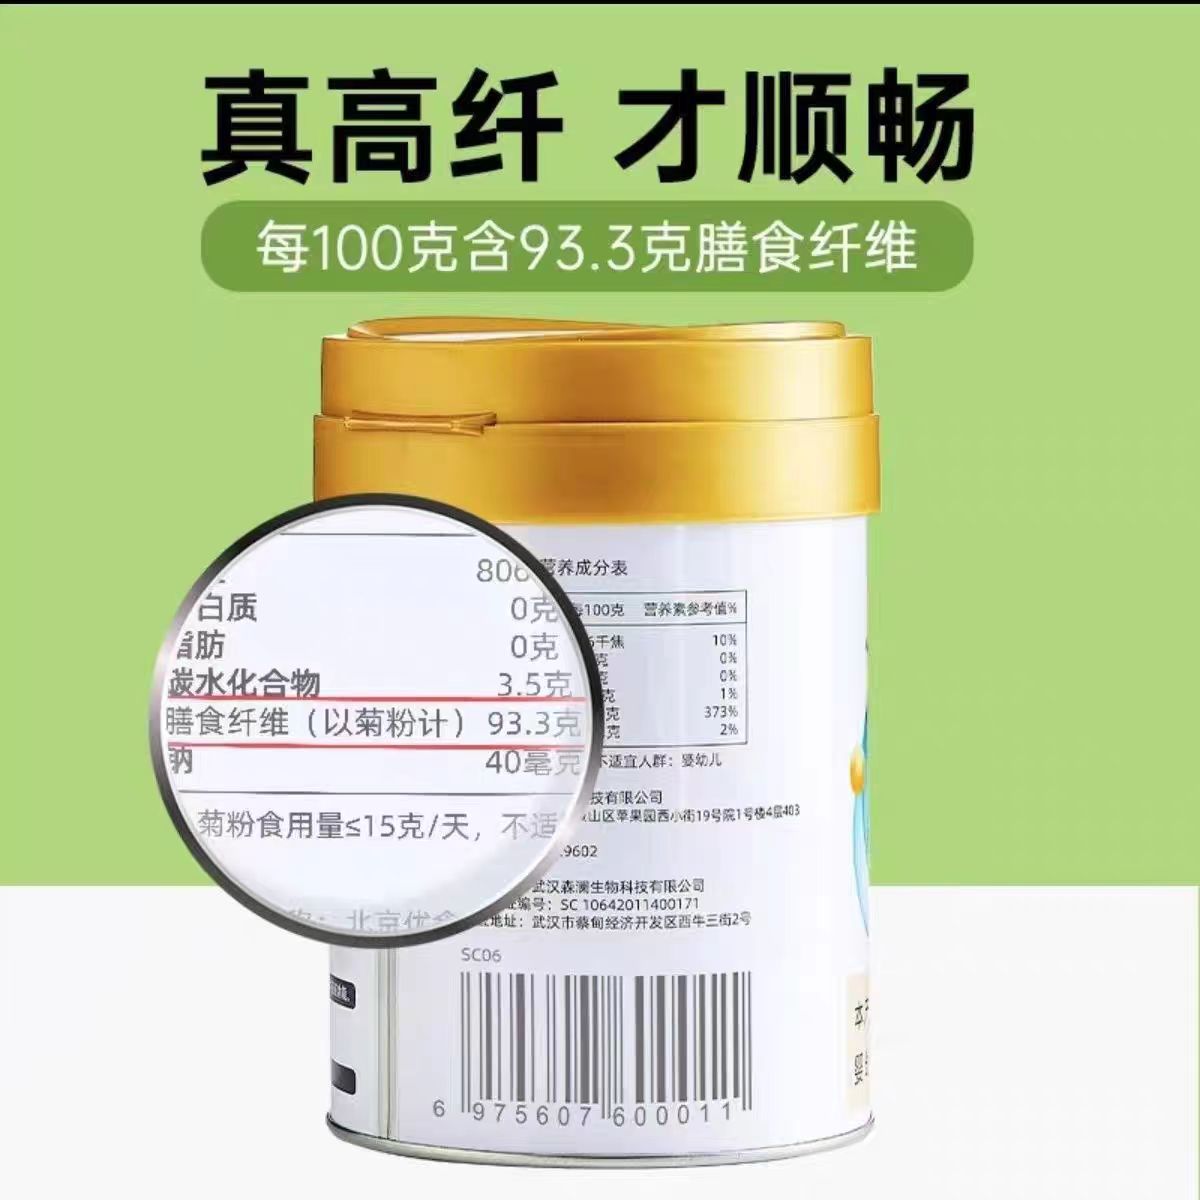 菊粉 芊形菊粉益生元可溶性膳食纤维 300g/桶 膳食纤维营养补充剂